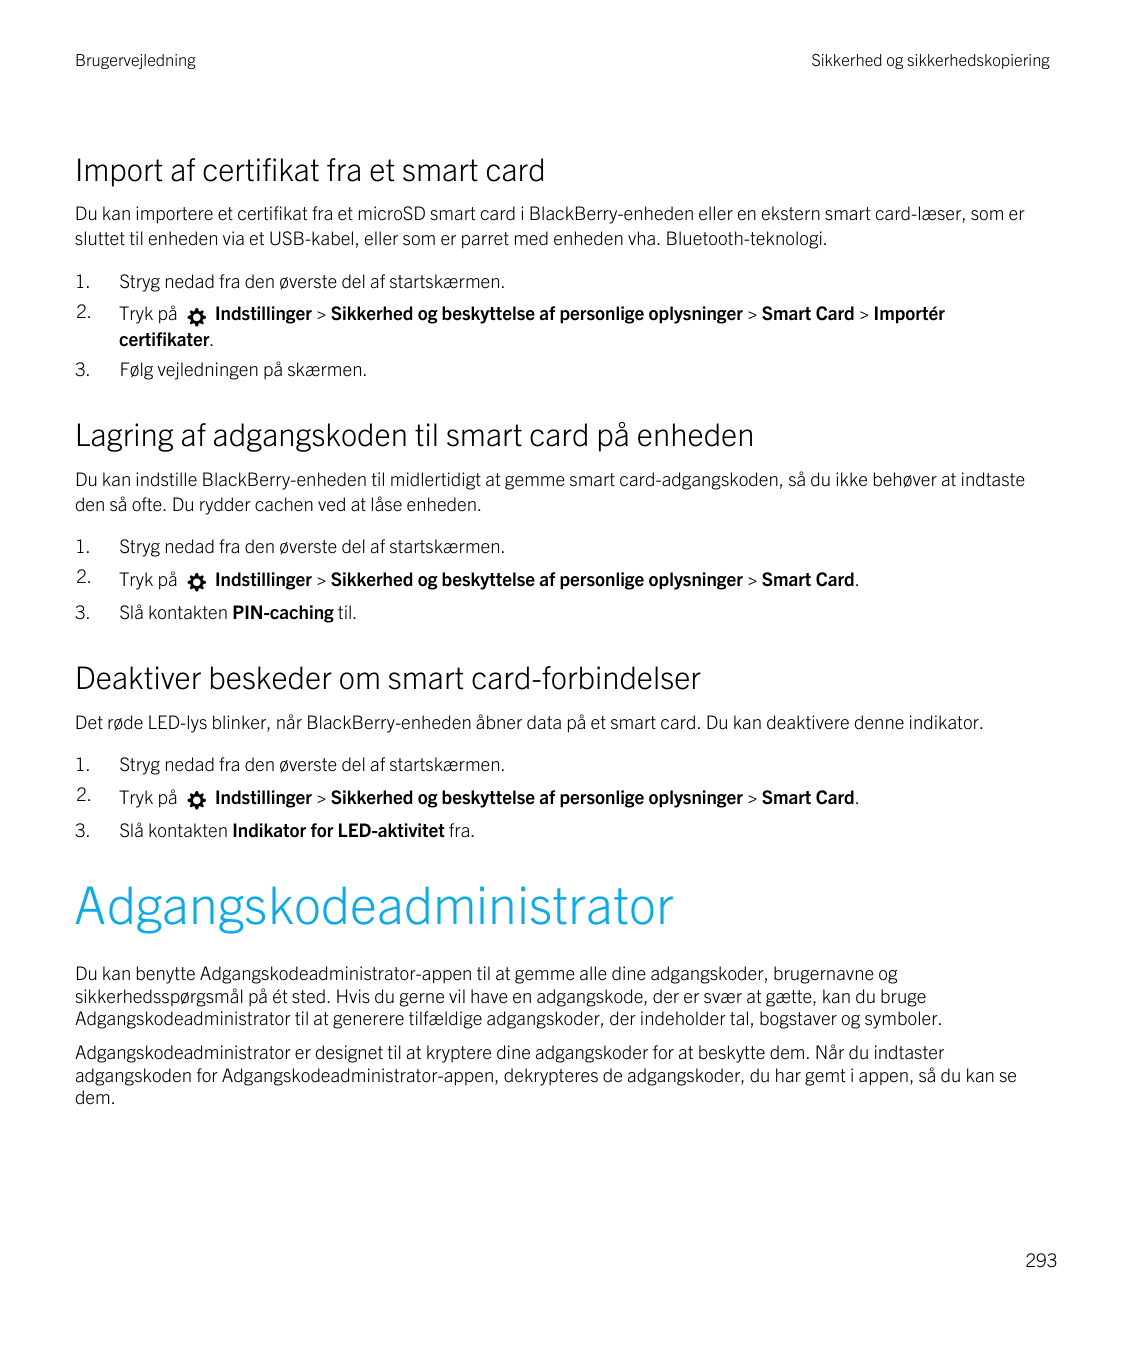 BrugervejledningSikkerhed og sikkerhedskopieringImport af certifikat fra et smart cardDu kan importere et certifikat fra et micr